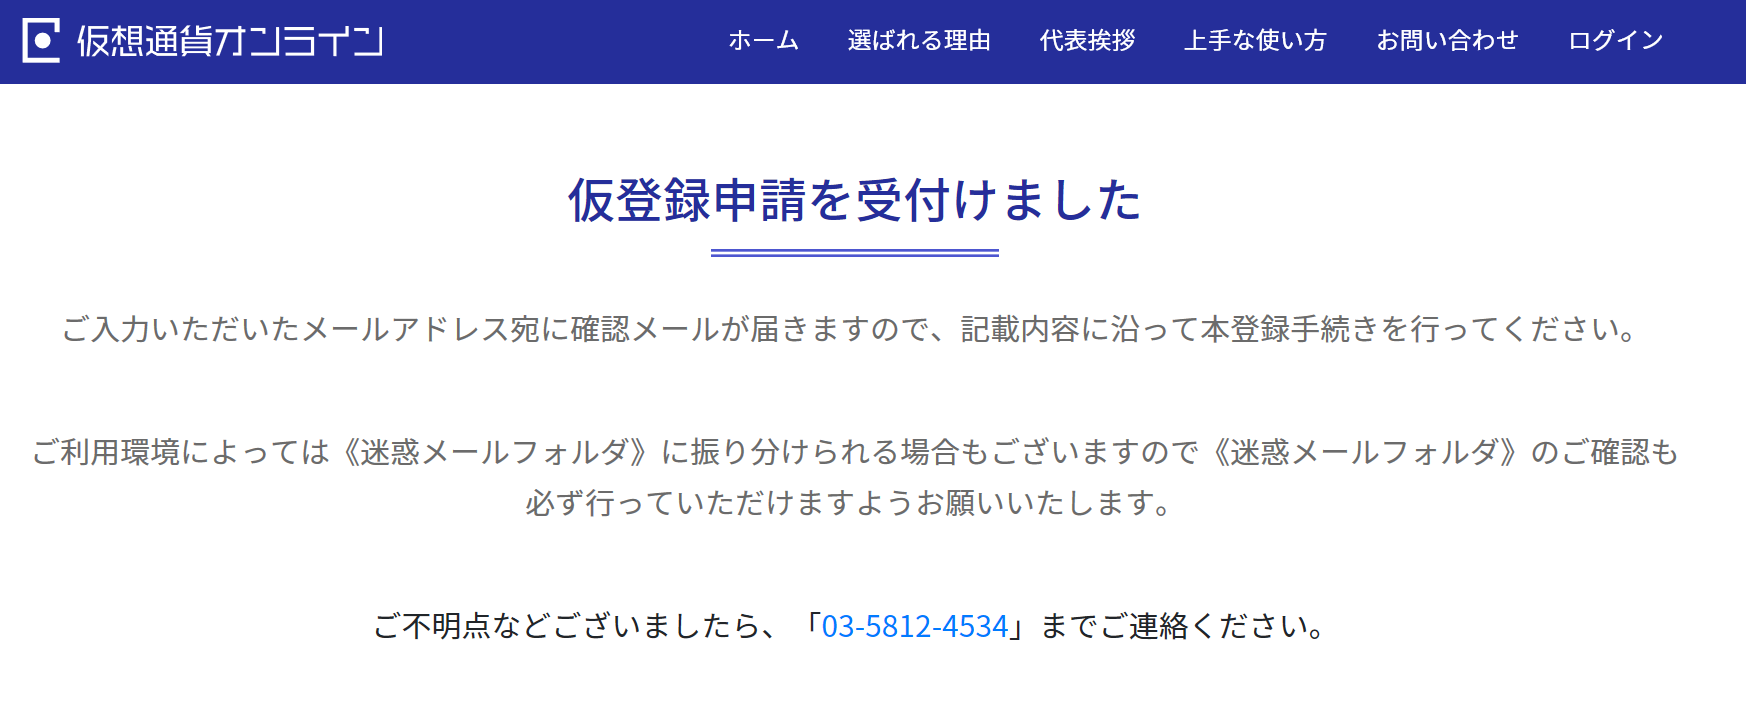 日本仮想通貨オンライン 仮登録申請受付画面